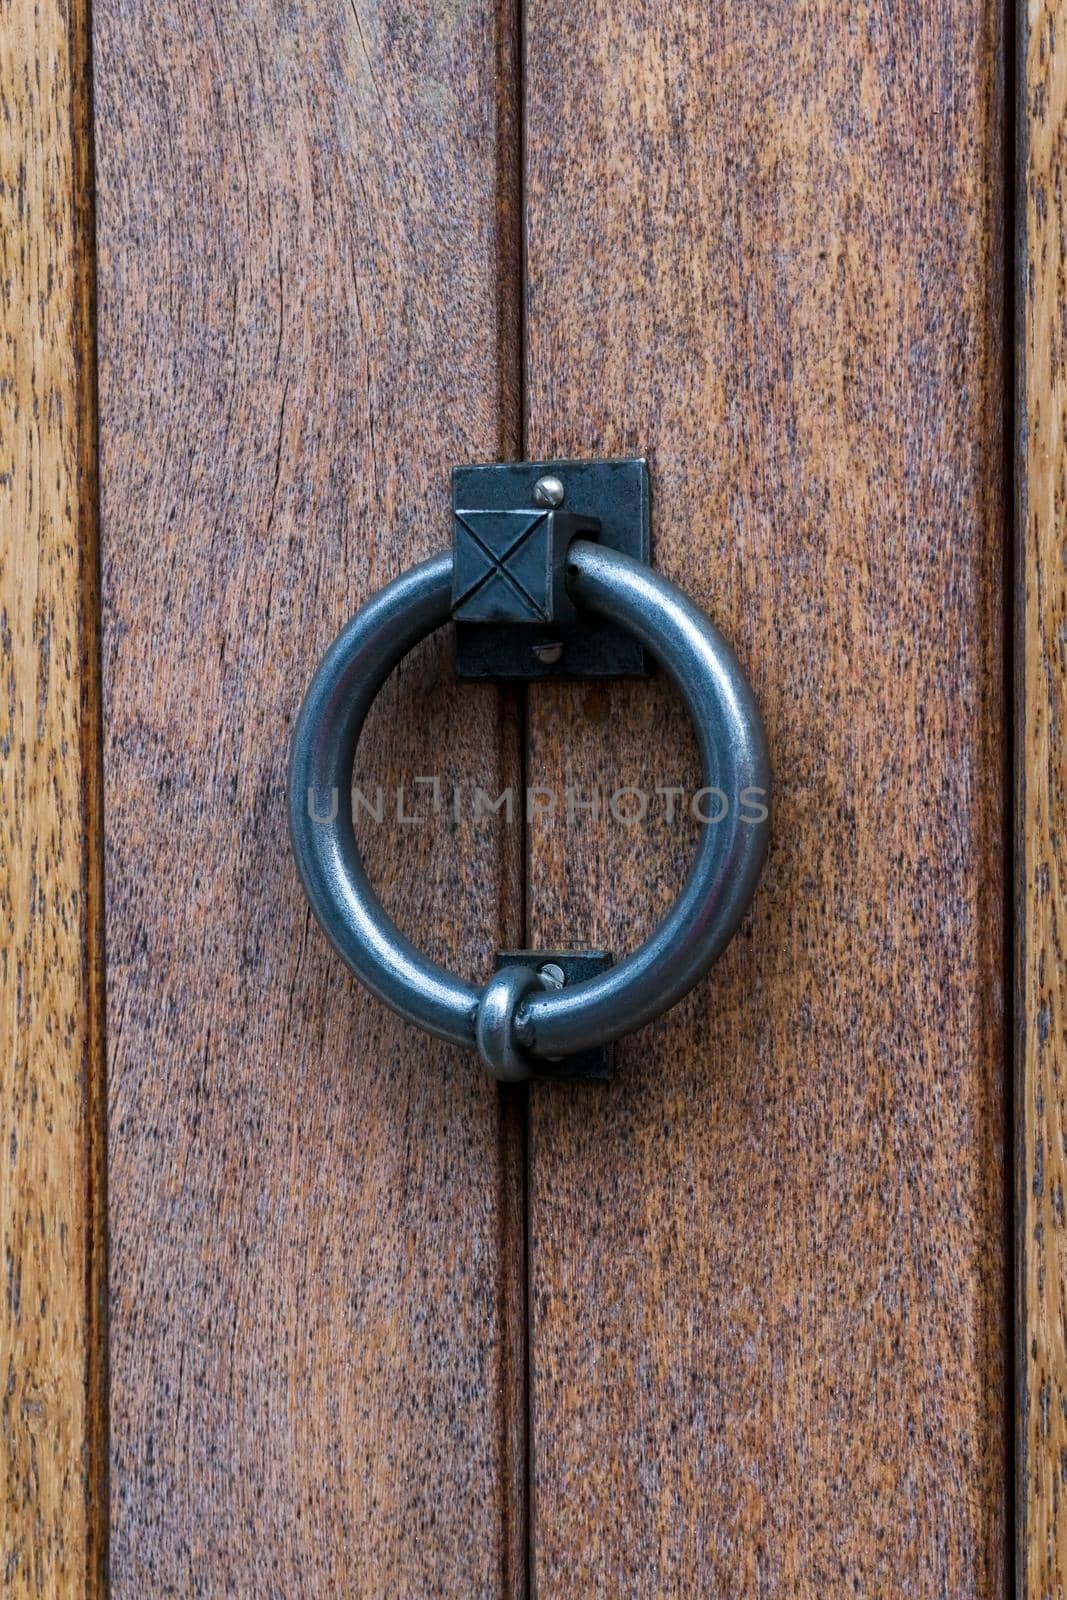 Metal ring door knocker on a wooden door close up